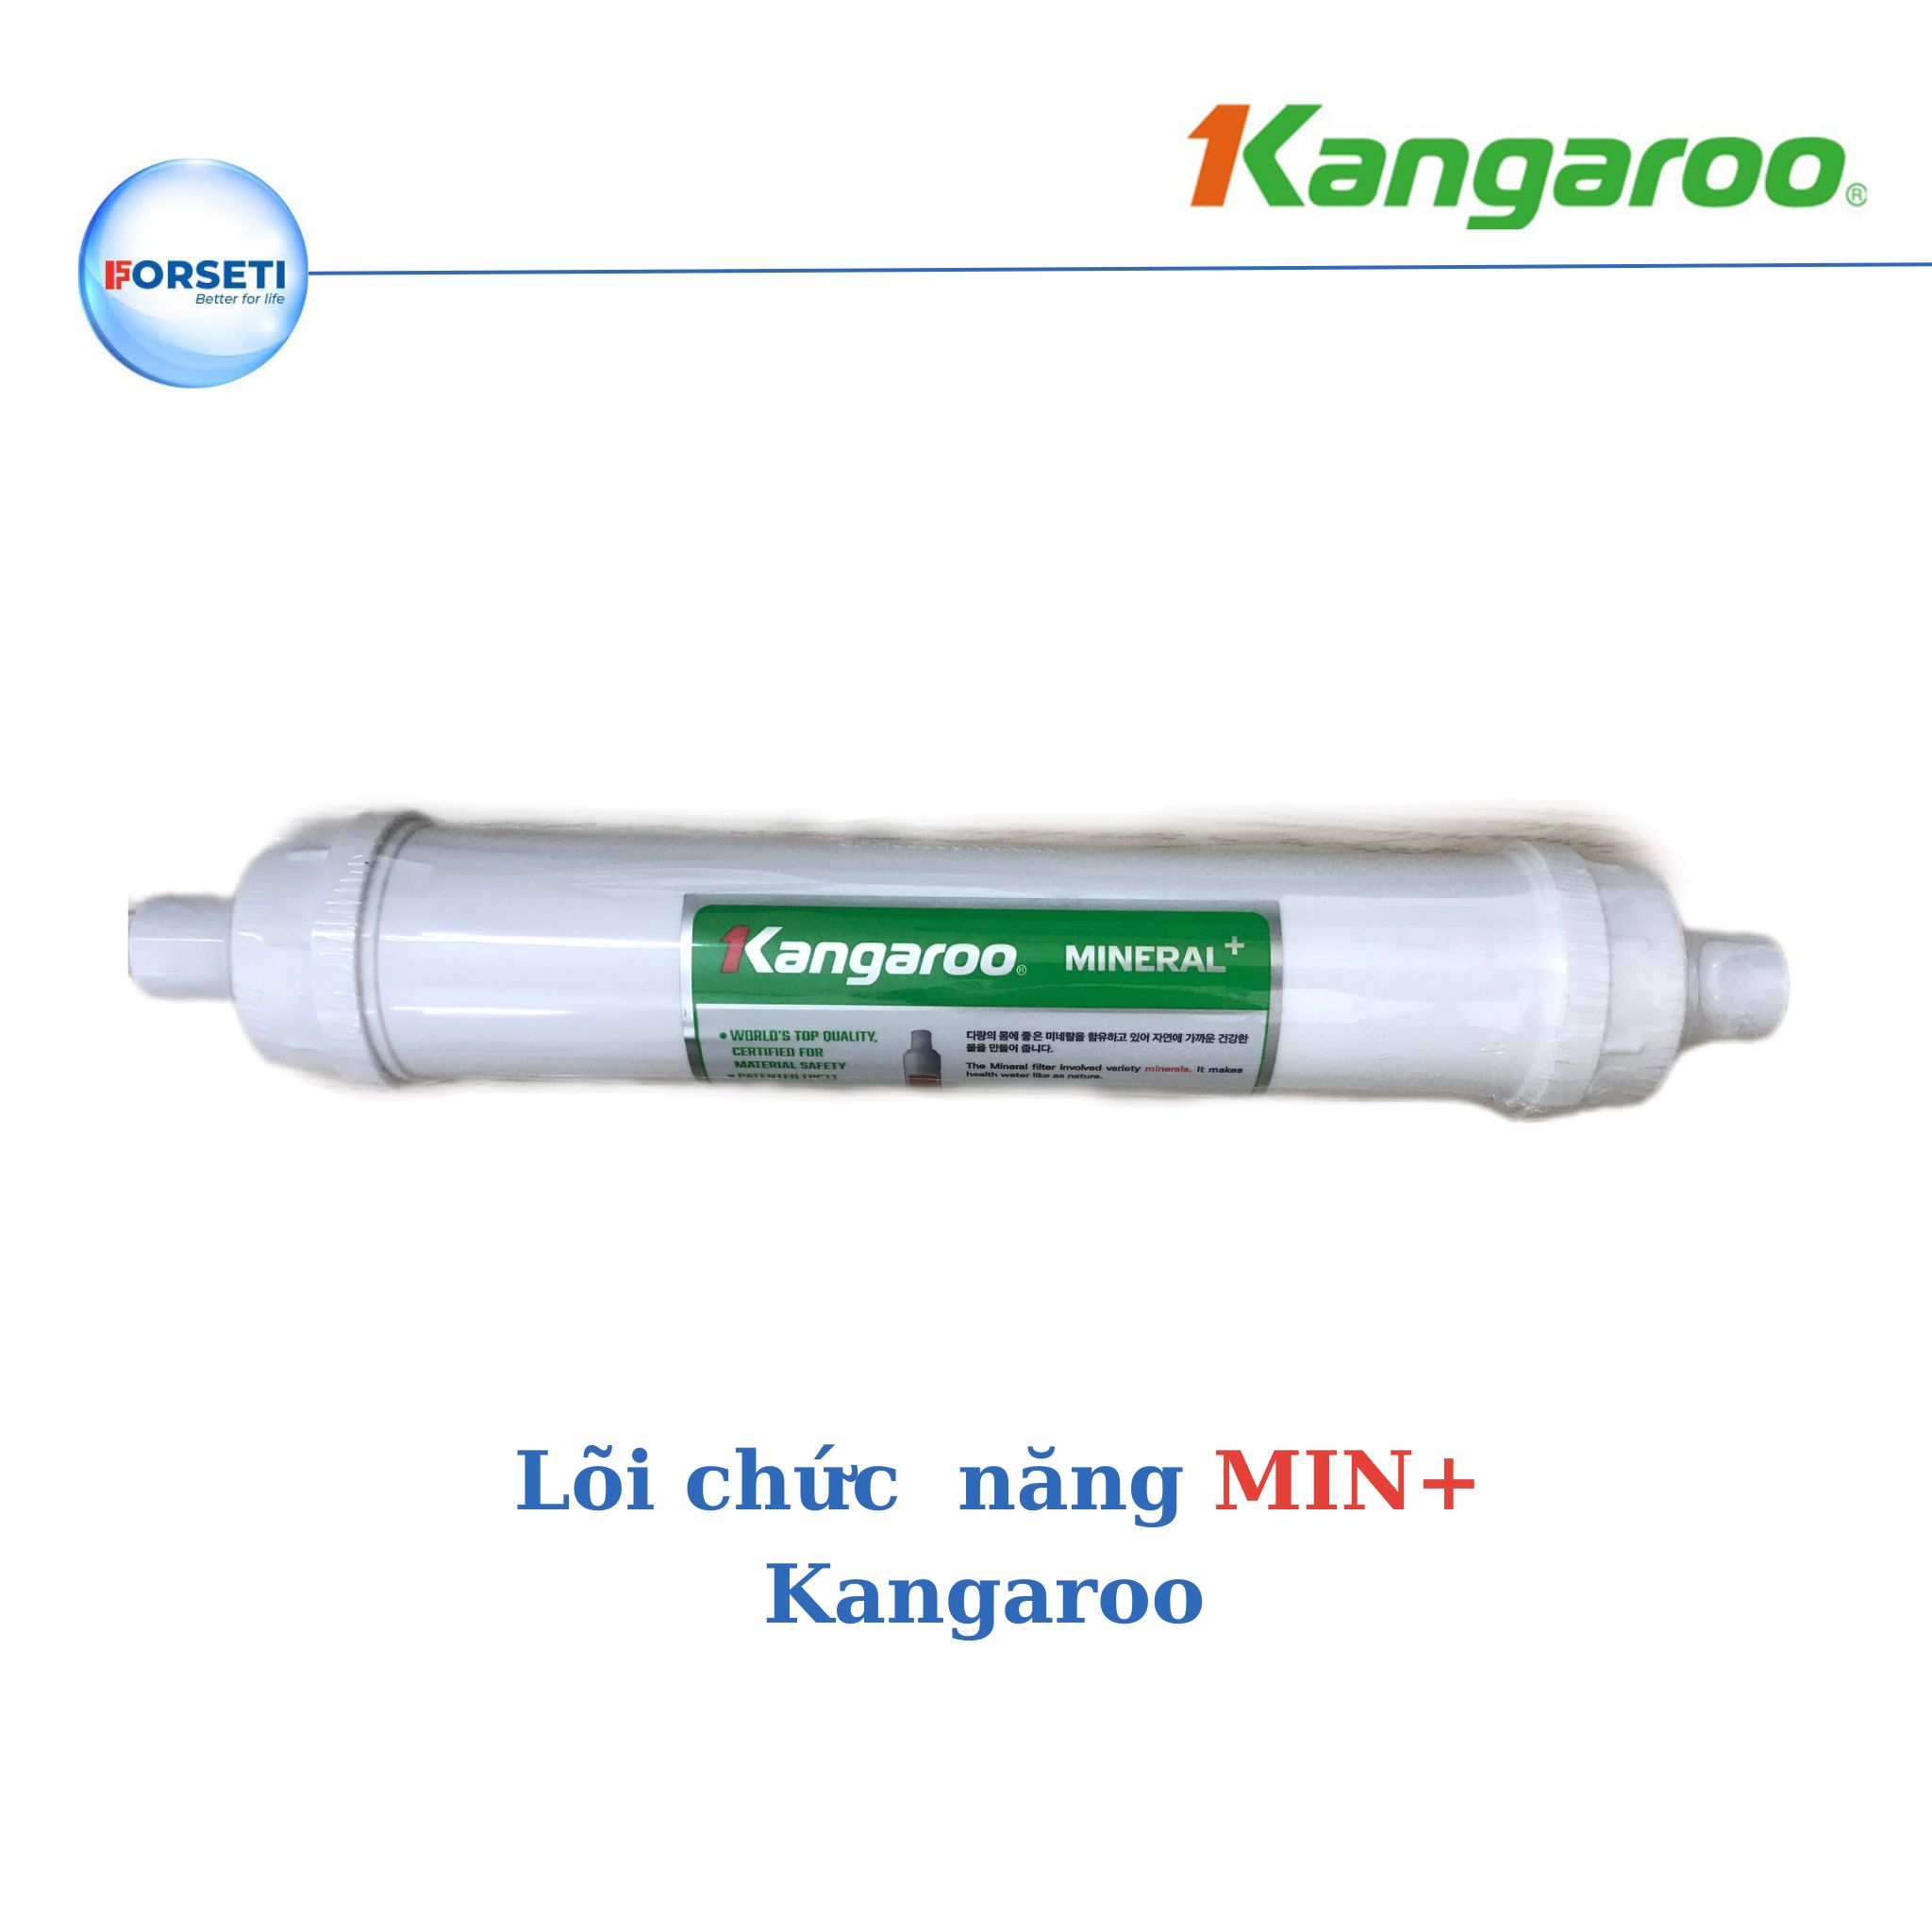 Lõi lọc Kangaroo lõi lọc số 8 - Mineral+ dùng cho máy lọc nước Kangaroo Hydrogen - Hàng chính hãng